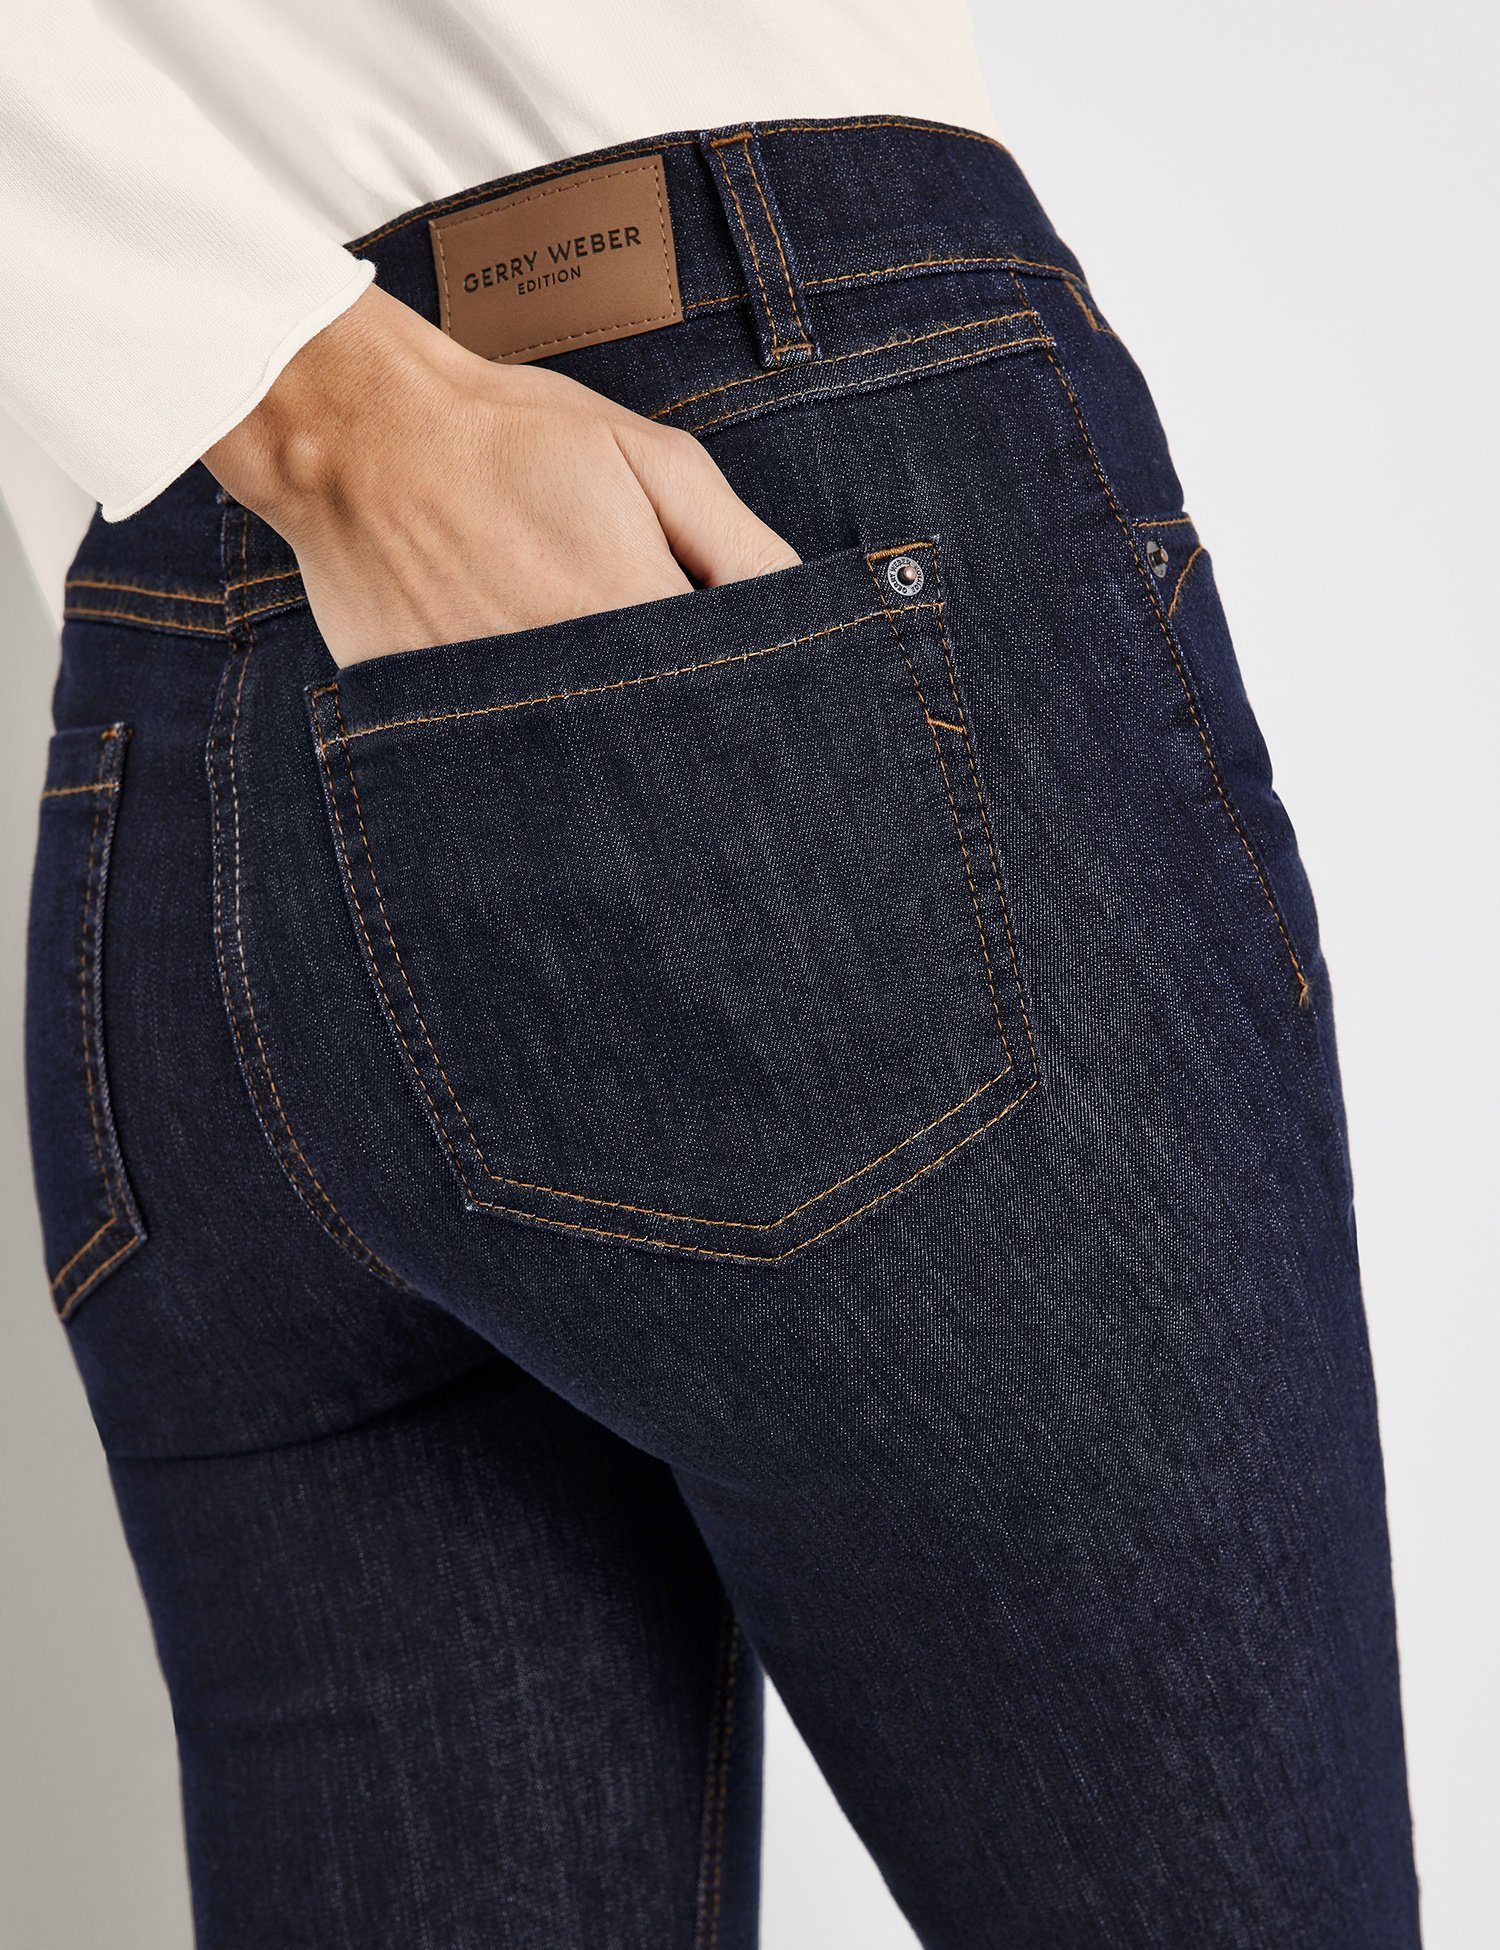 GERRY WEBER Regular-fit-Jeans Hose Jeans denim dark